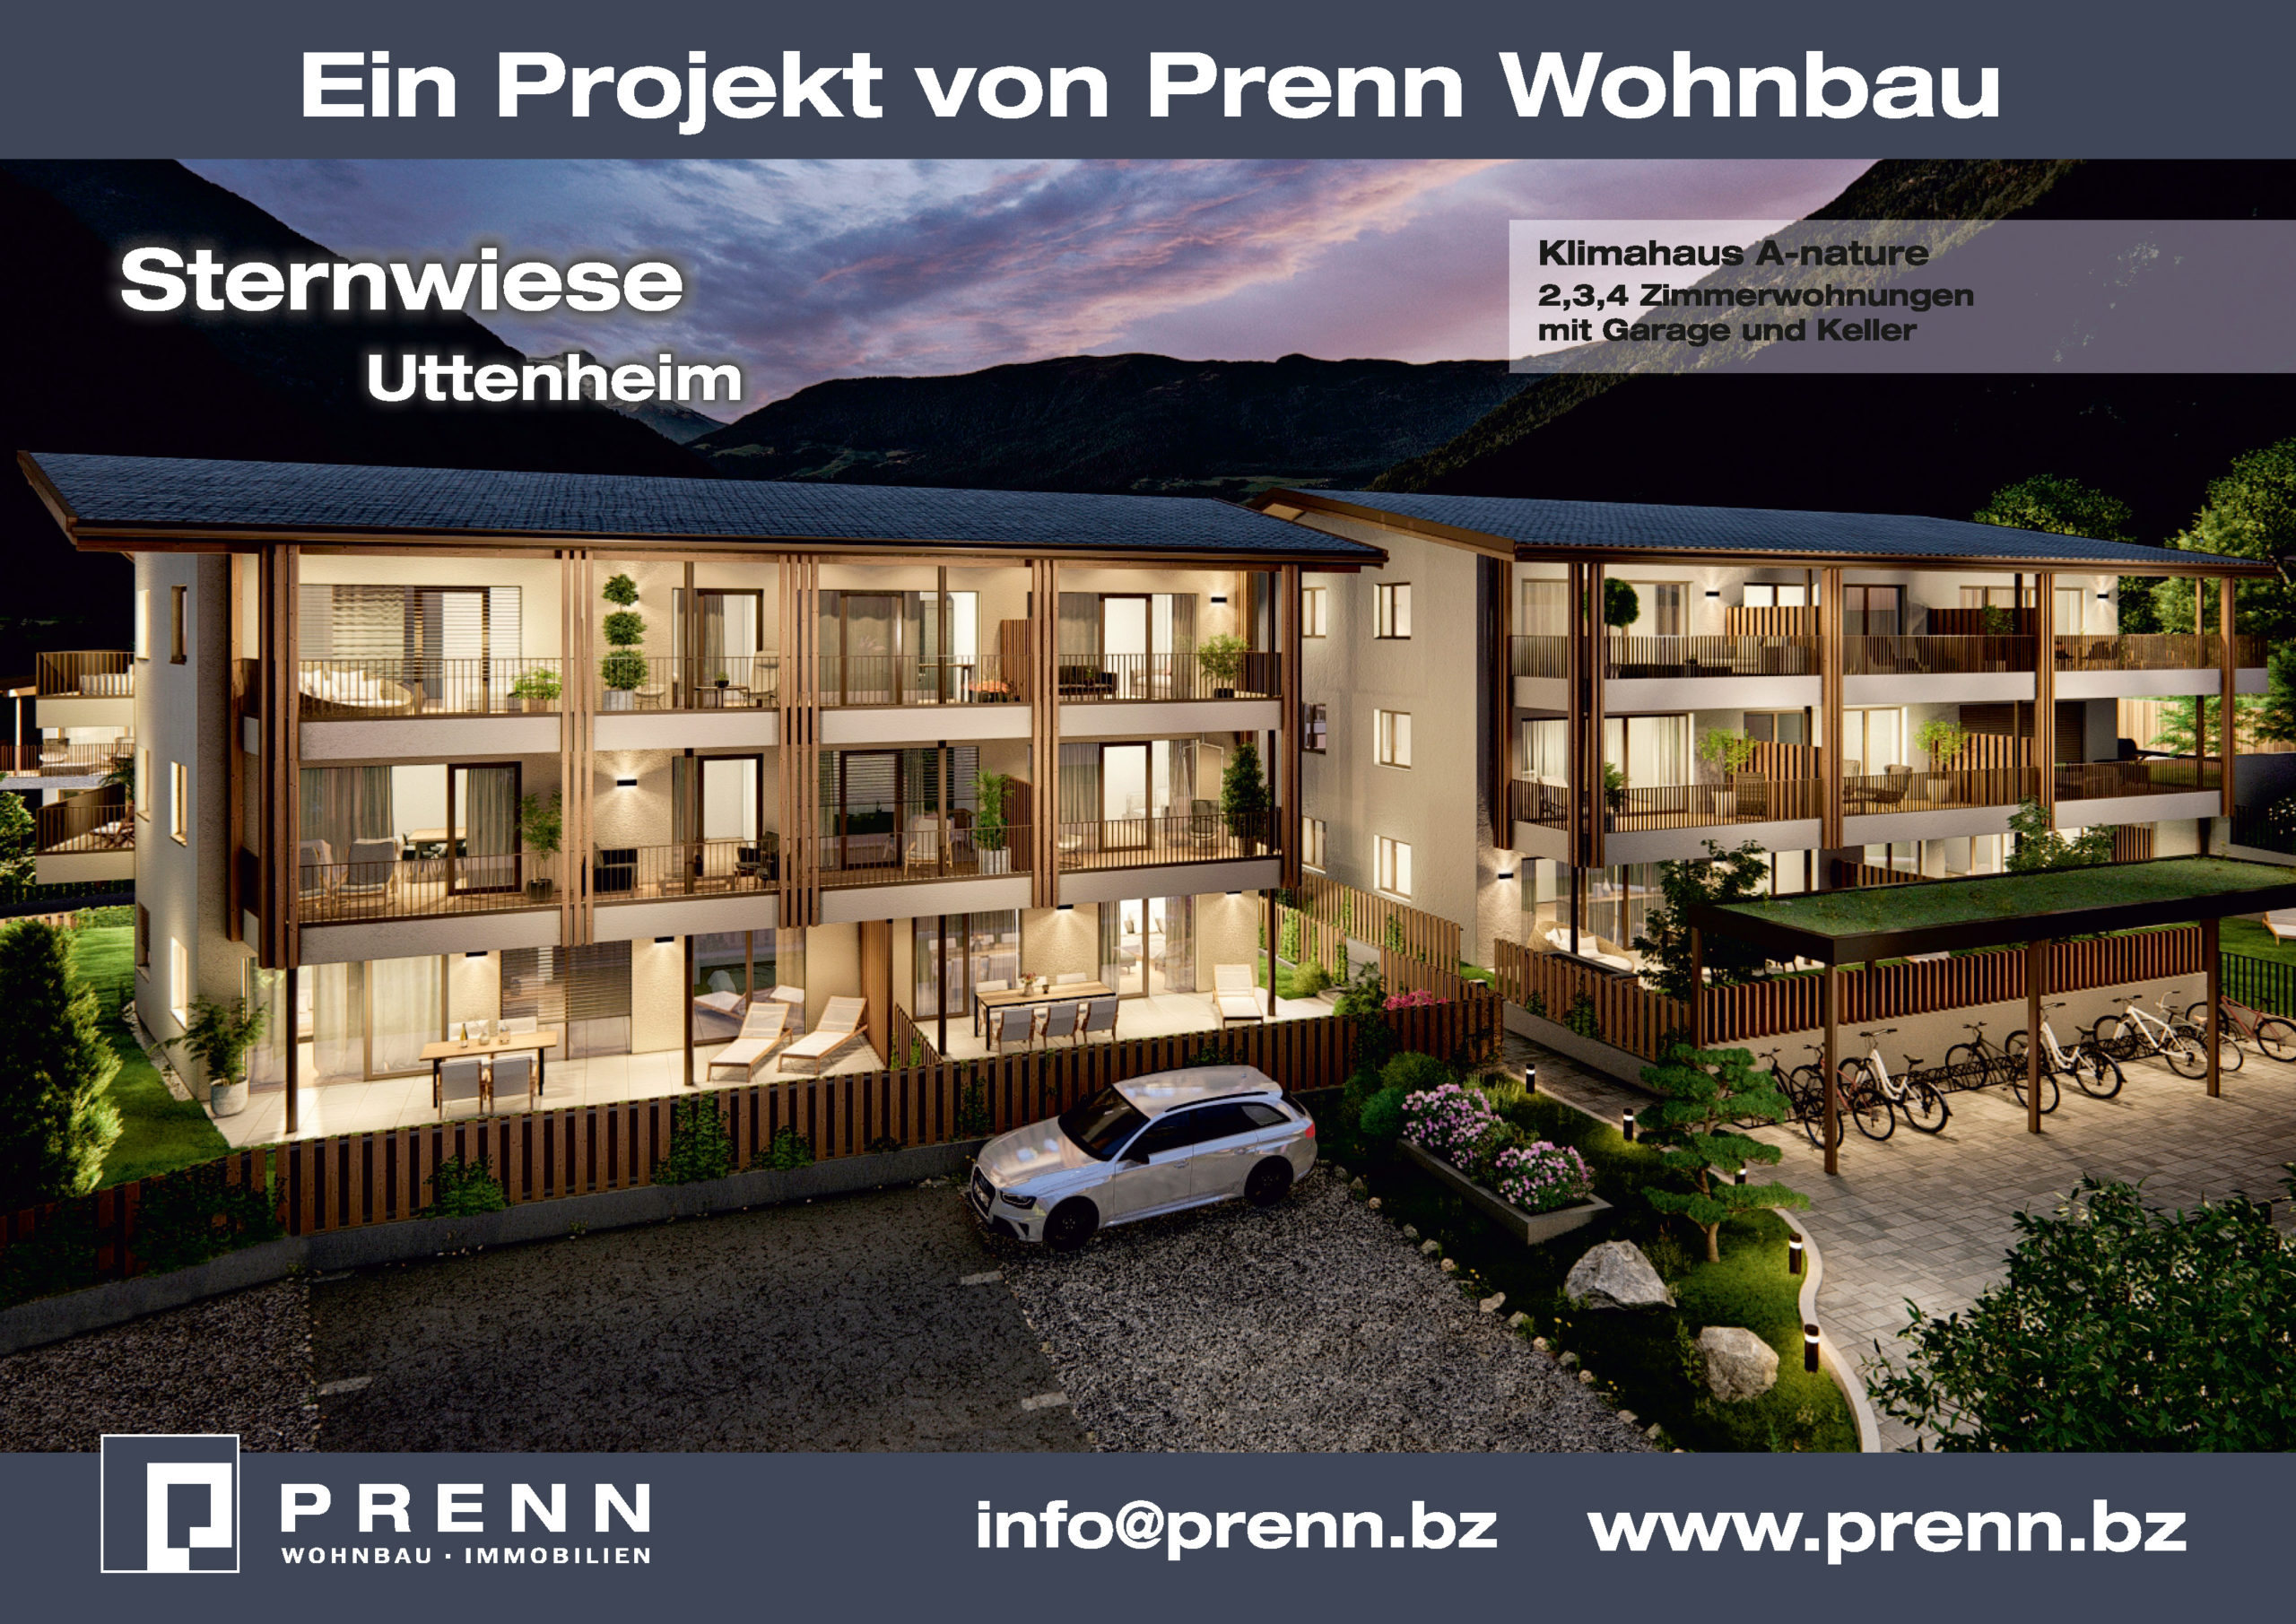 PreBau GmbH